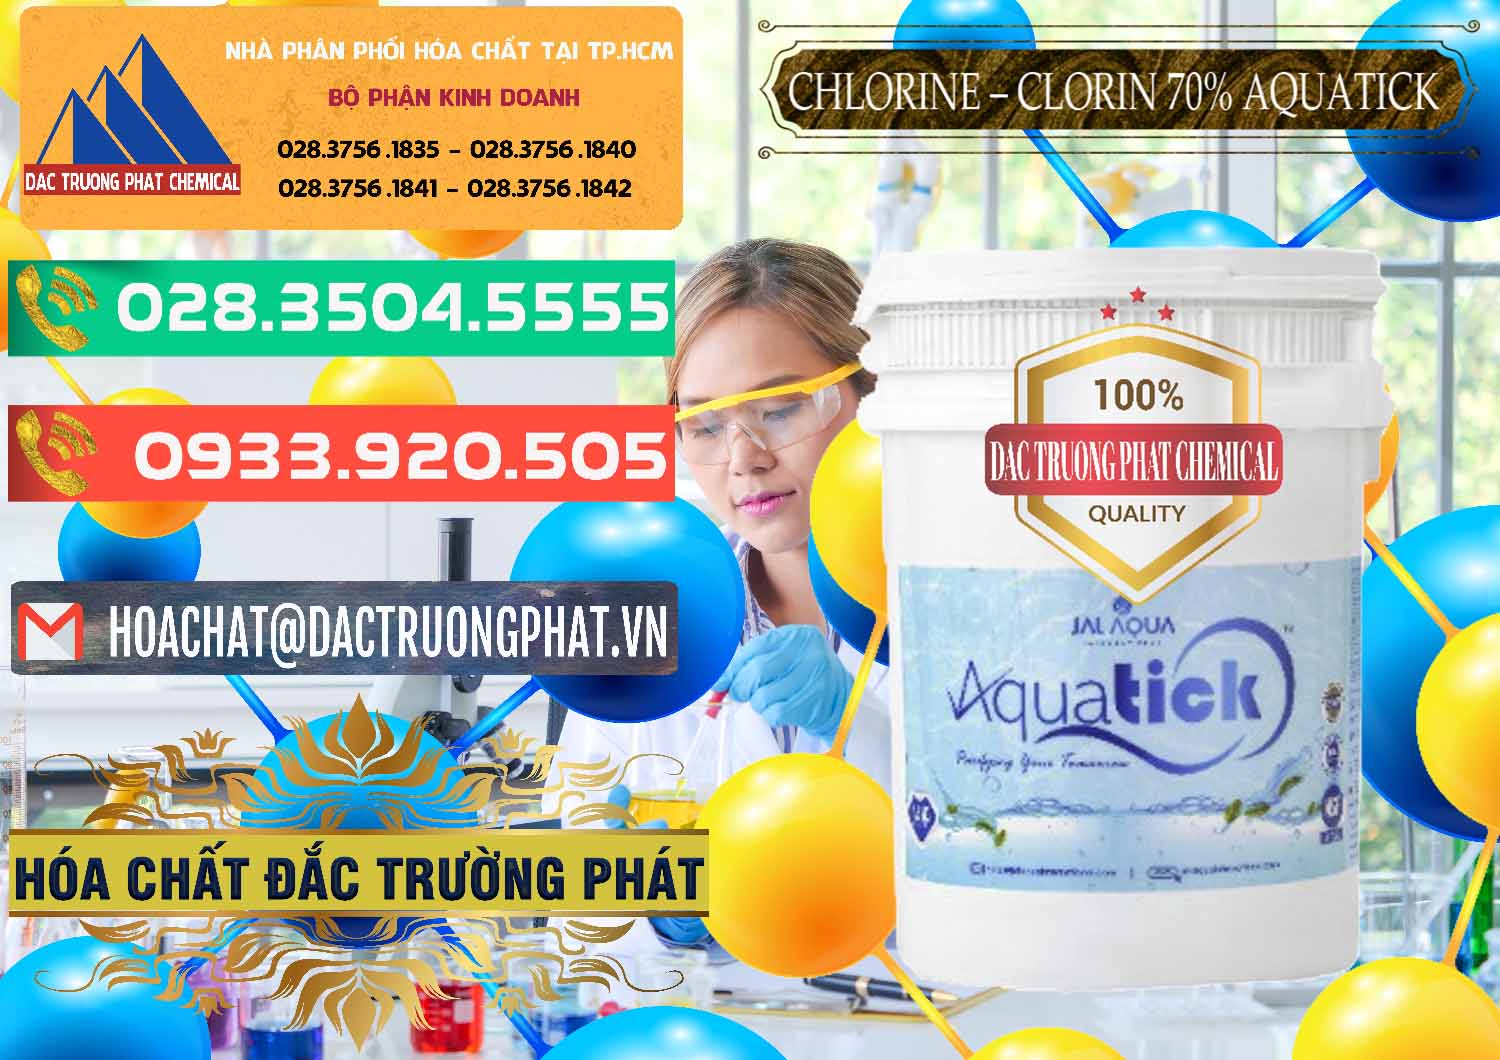 Nơi chuyên bán và cung ứng Chlorine – Clorin 70% Aquatick Thùng Cao Jal Aqua Ấn Độ India - 0237 - Cty chuyên phân phối _ kinh doanh hóa chất tại TP.HCM - congtyhoachat.com.vn